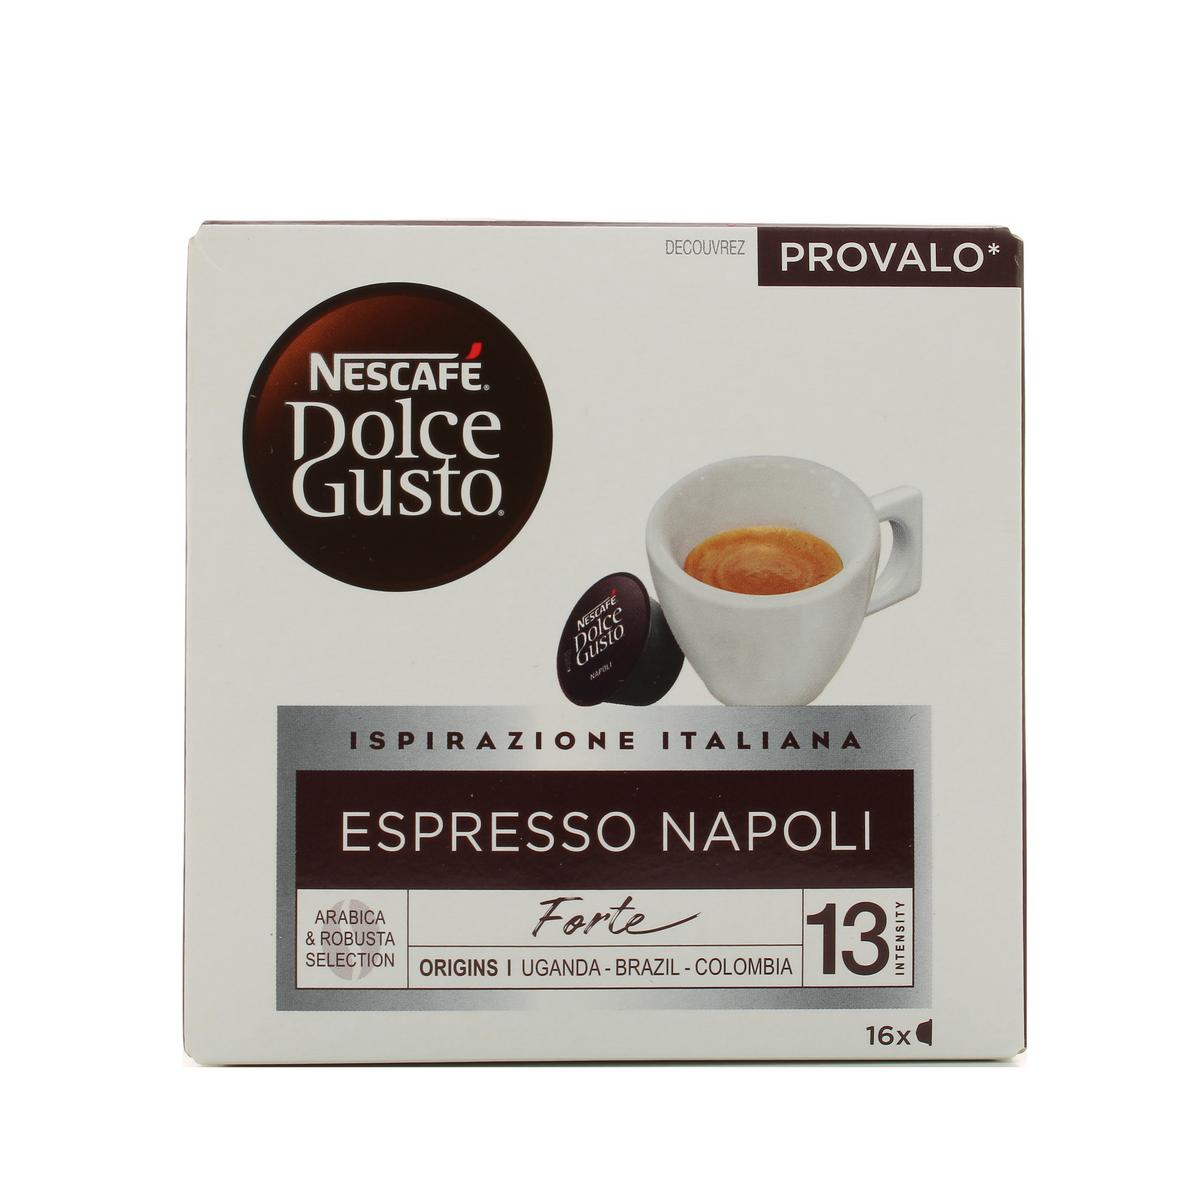 Nescafe Dolce Gusto Café Espresso Napoli intensité 13, 16 capsules